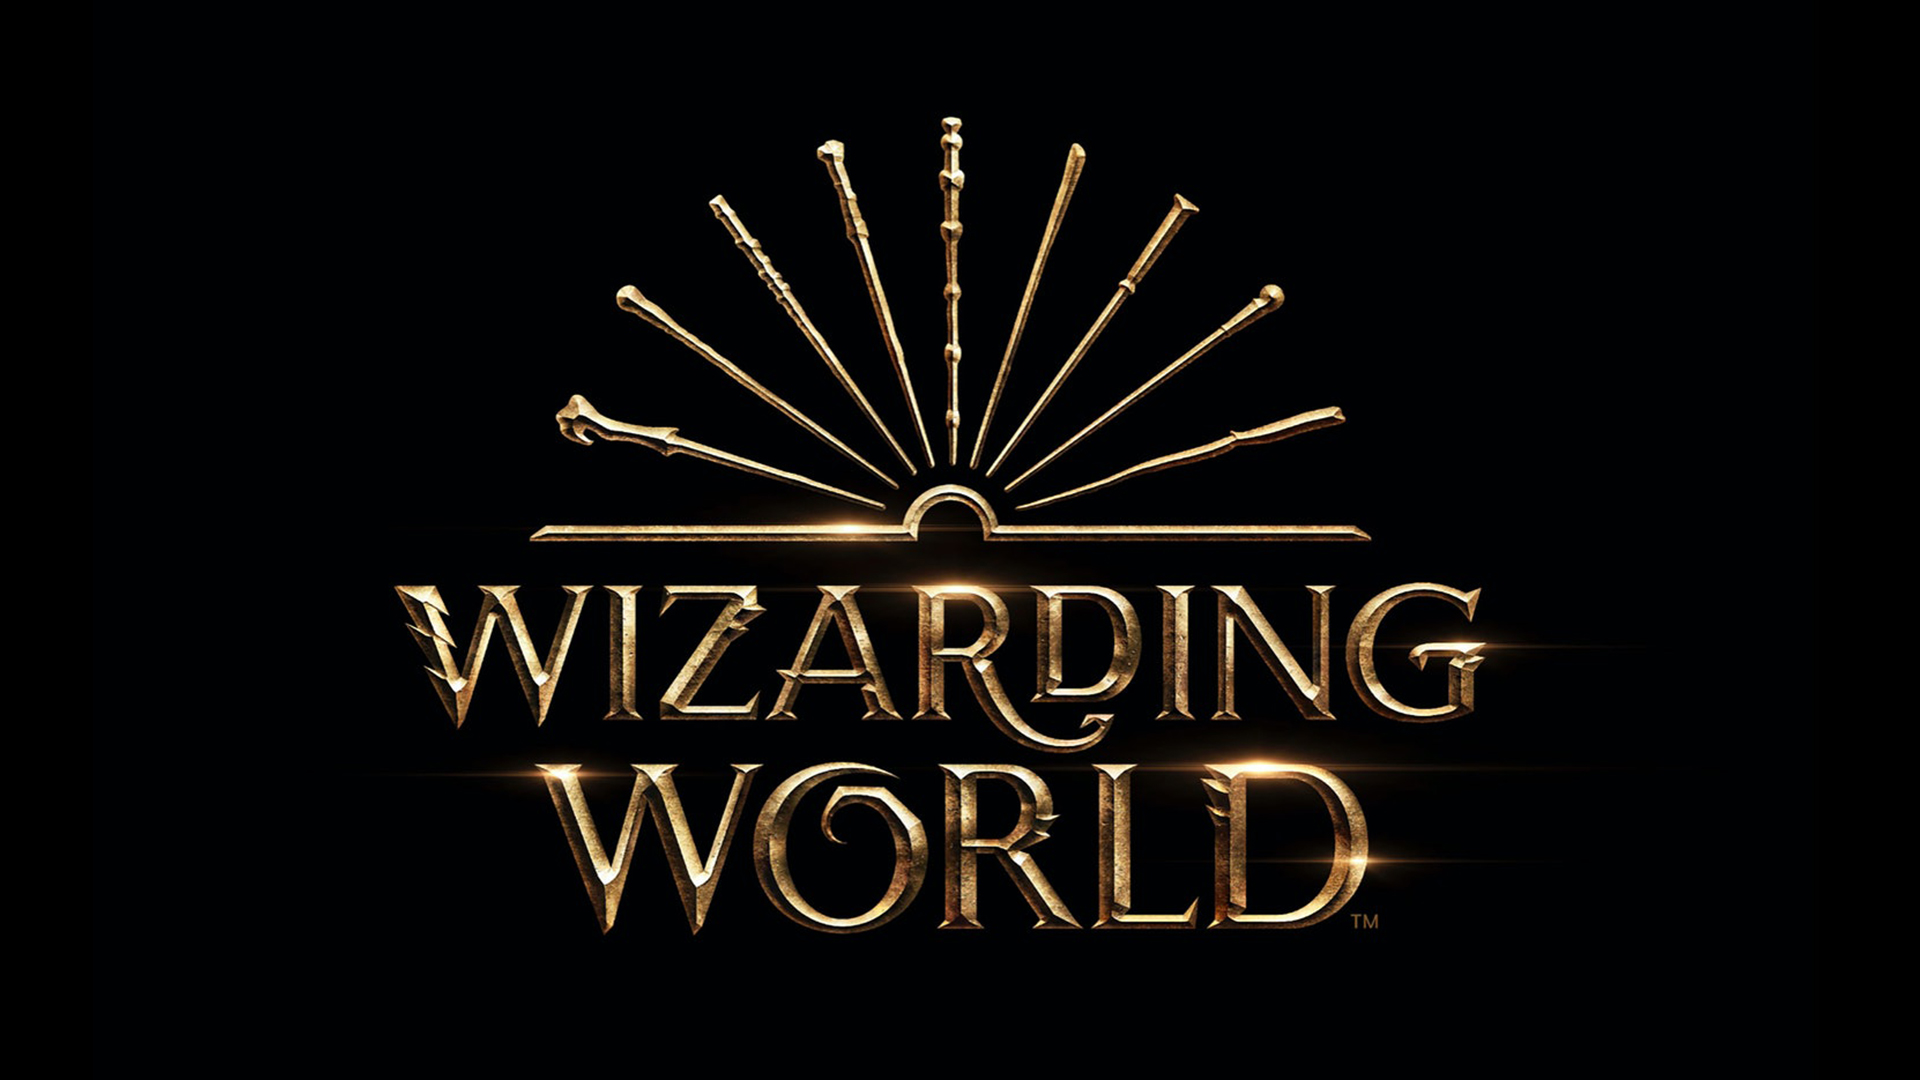 Wizarding World - Matt Varner